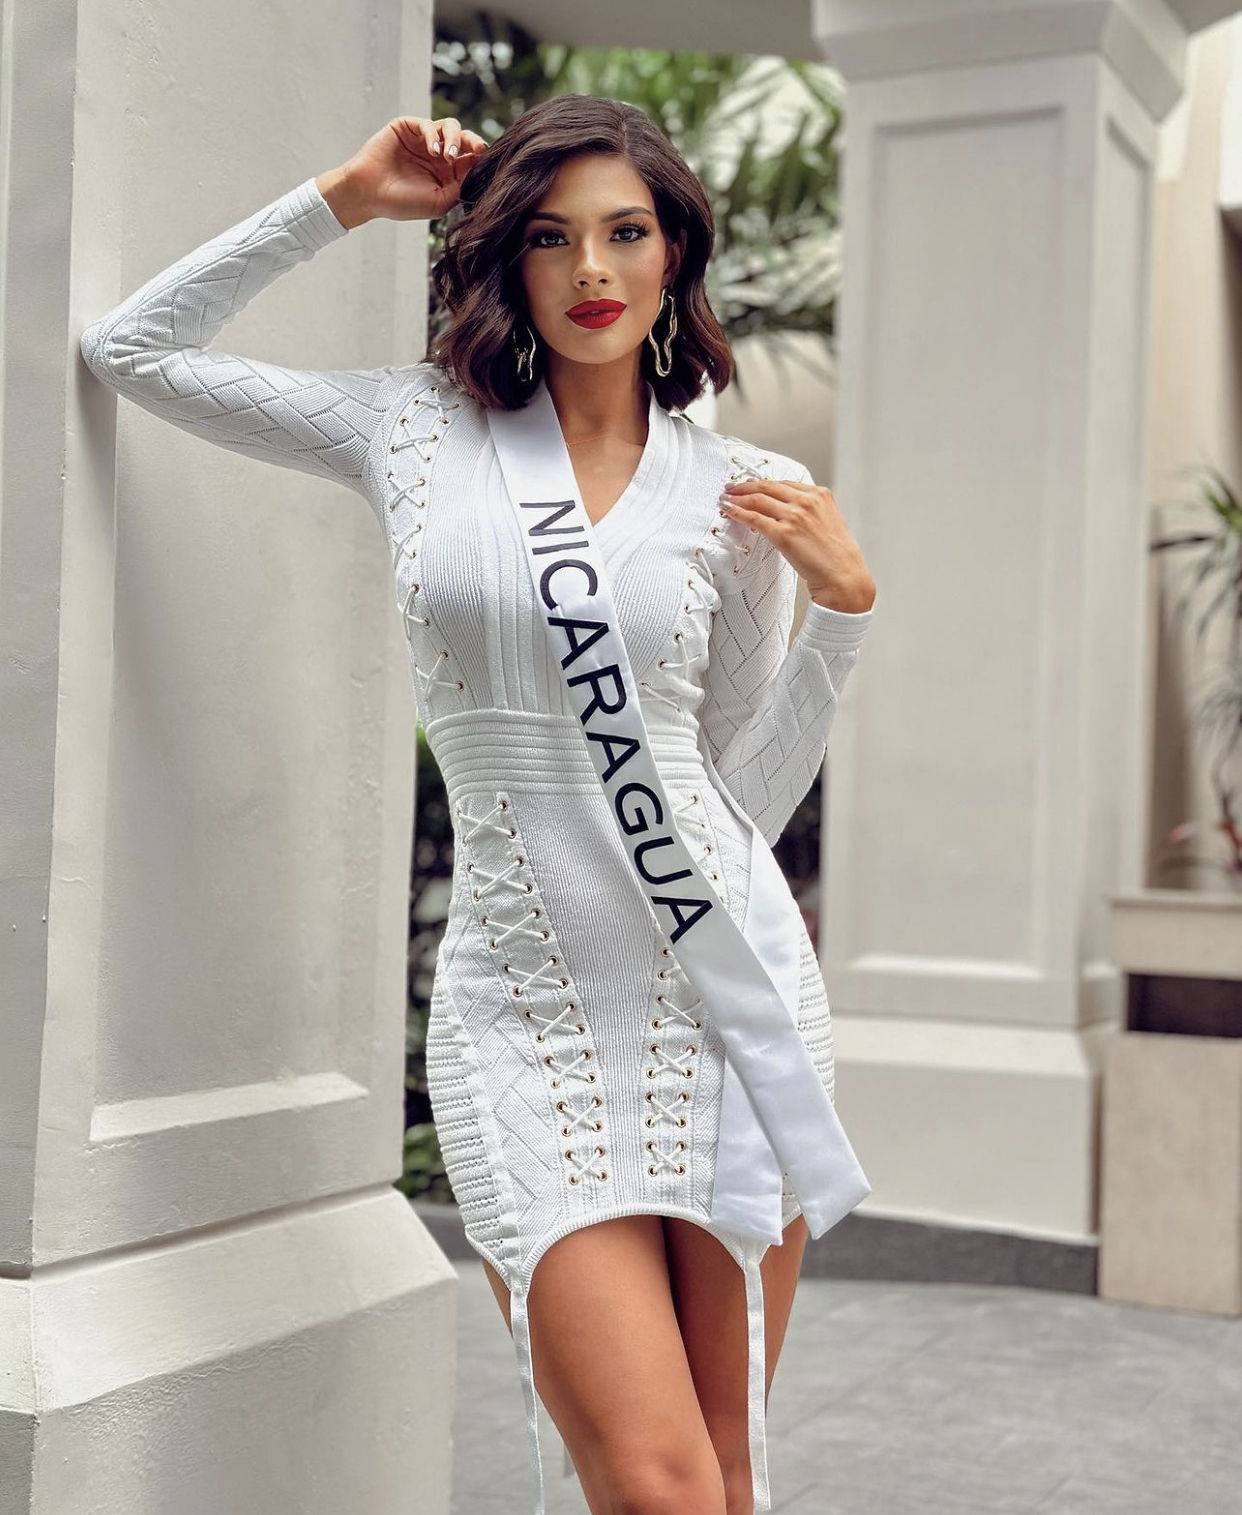  Sheynnis tốt nghiệp ngành truyền thông, muốn trở thành nhà sản xuất, biên tập viên trong tương lai. Người đẹp từng đăng quang Hoa hậu Thế giới Nicaragua 2020 và tham dự Miss World 2021 (lọt top 40). Cô được đánh giá cao bởi vẻ đẹp kết hợp giữa sự sang trọng, ngọt ngào và khả năng trình diễn chuyên nghiệp.